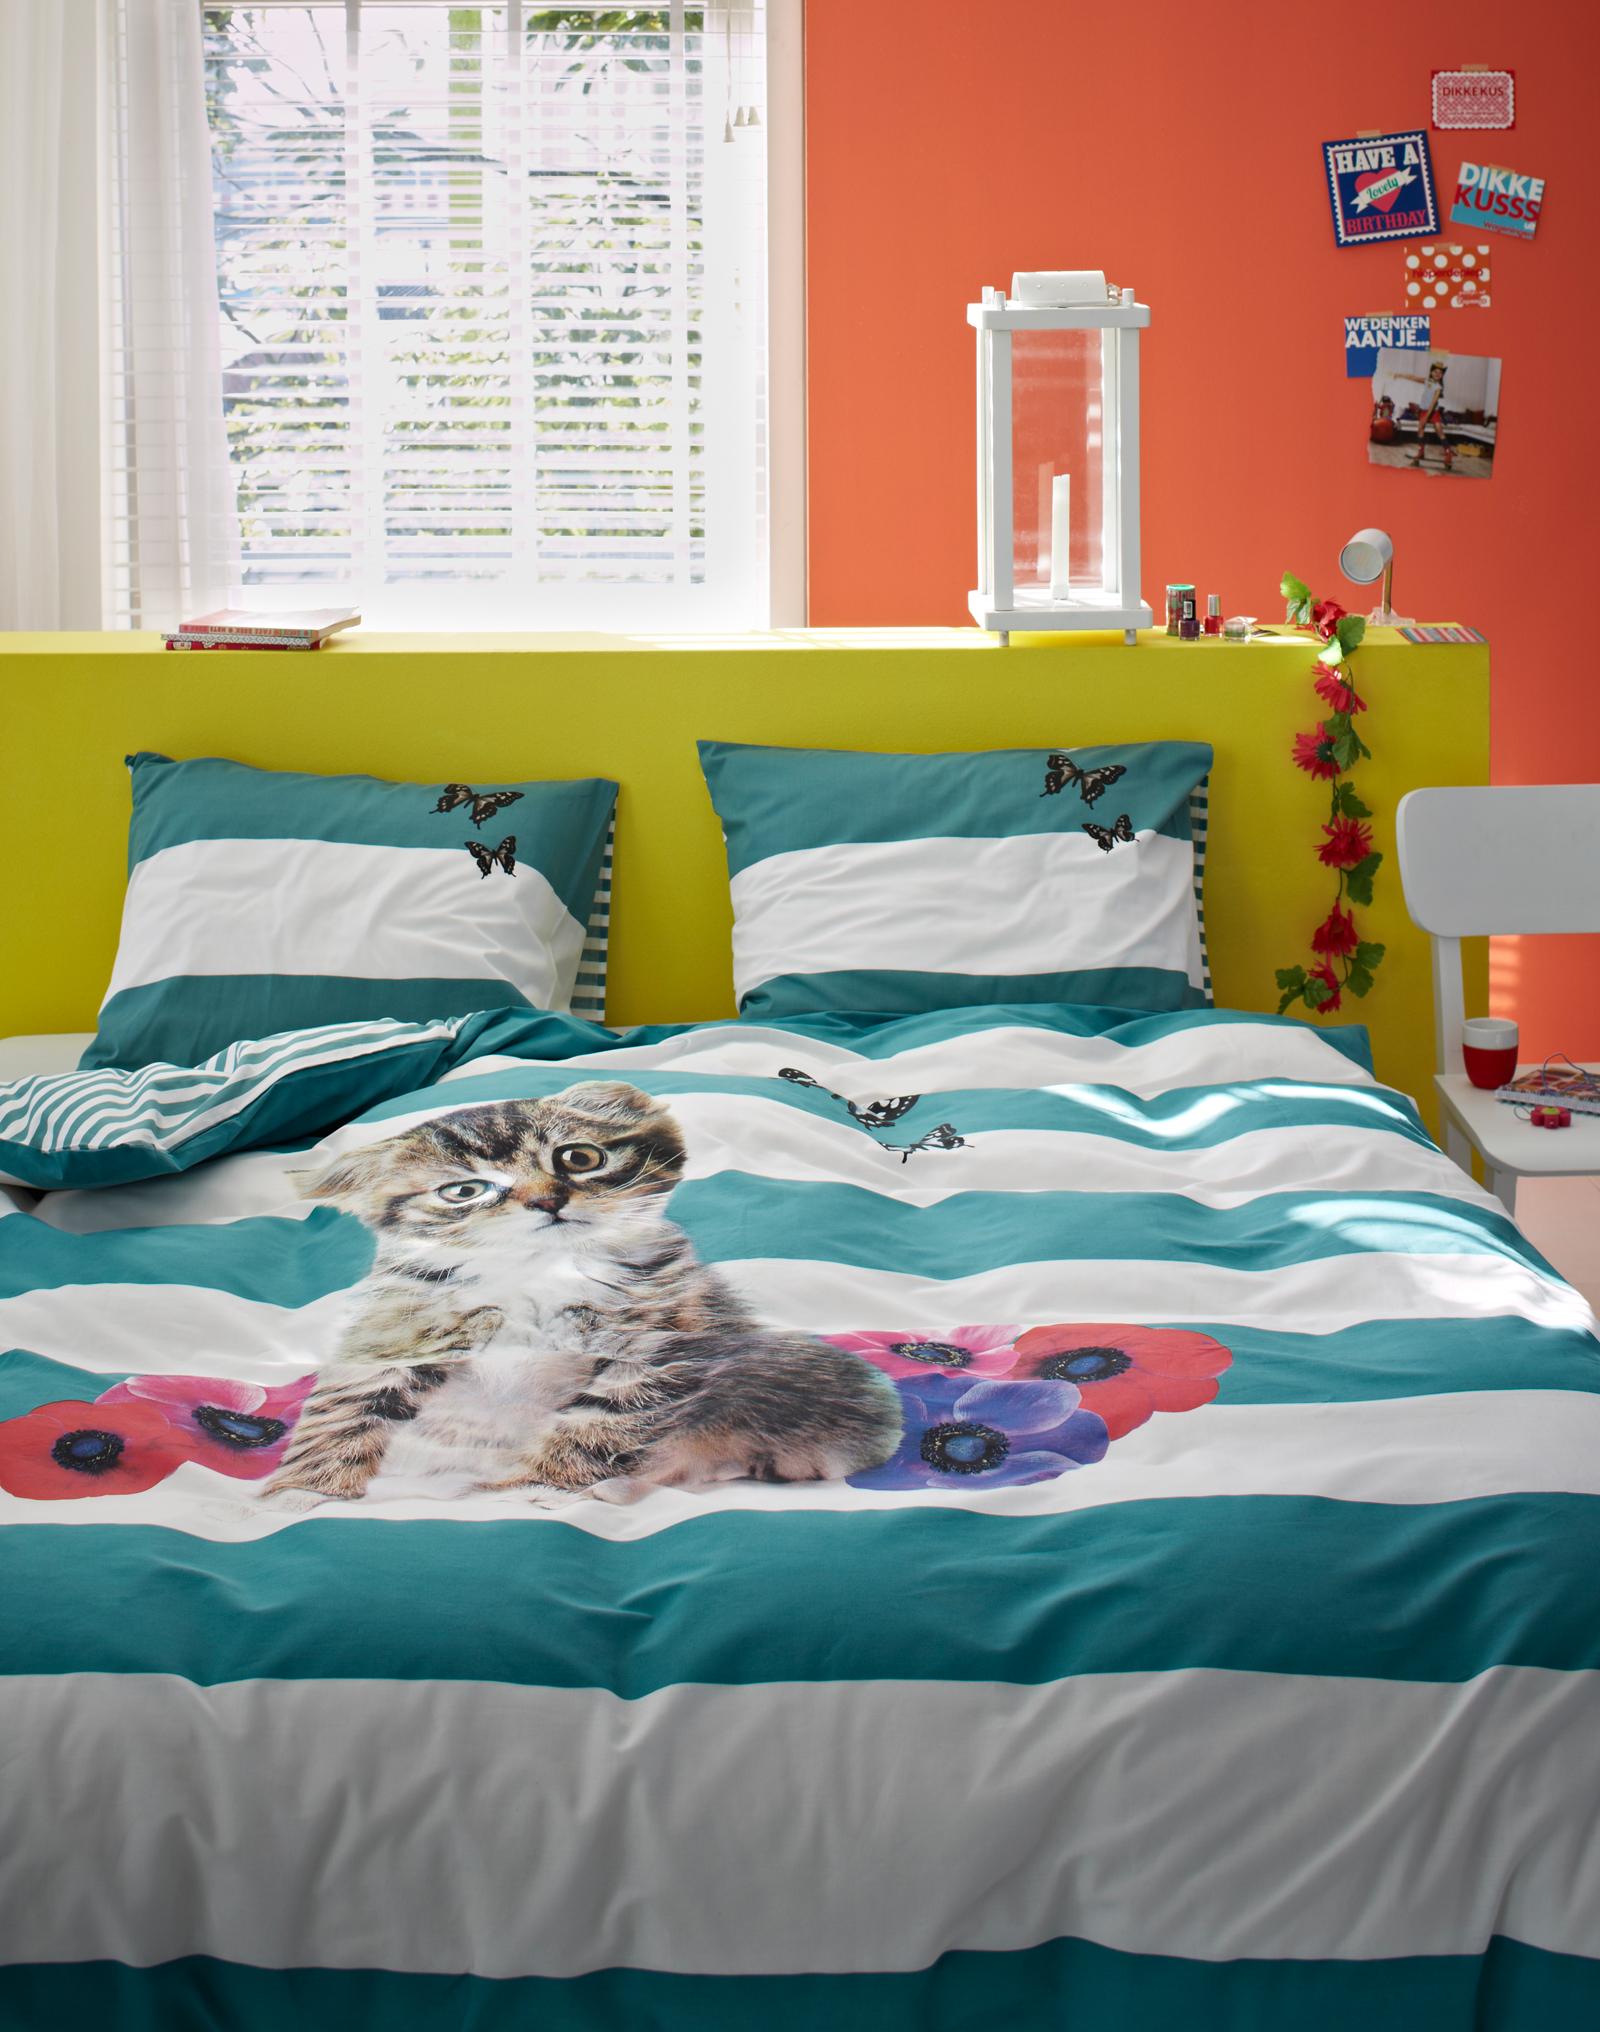 Katze als Motiv für die Bettwäsche #bett #wandfarbe #bettwäsche ©Essenza Home/Covers & Co